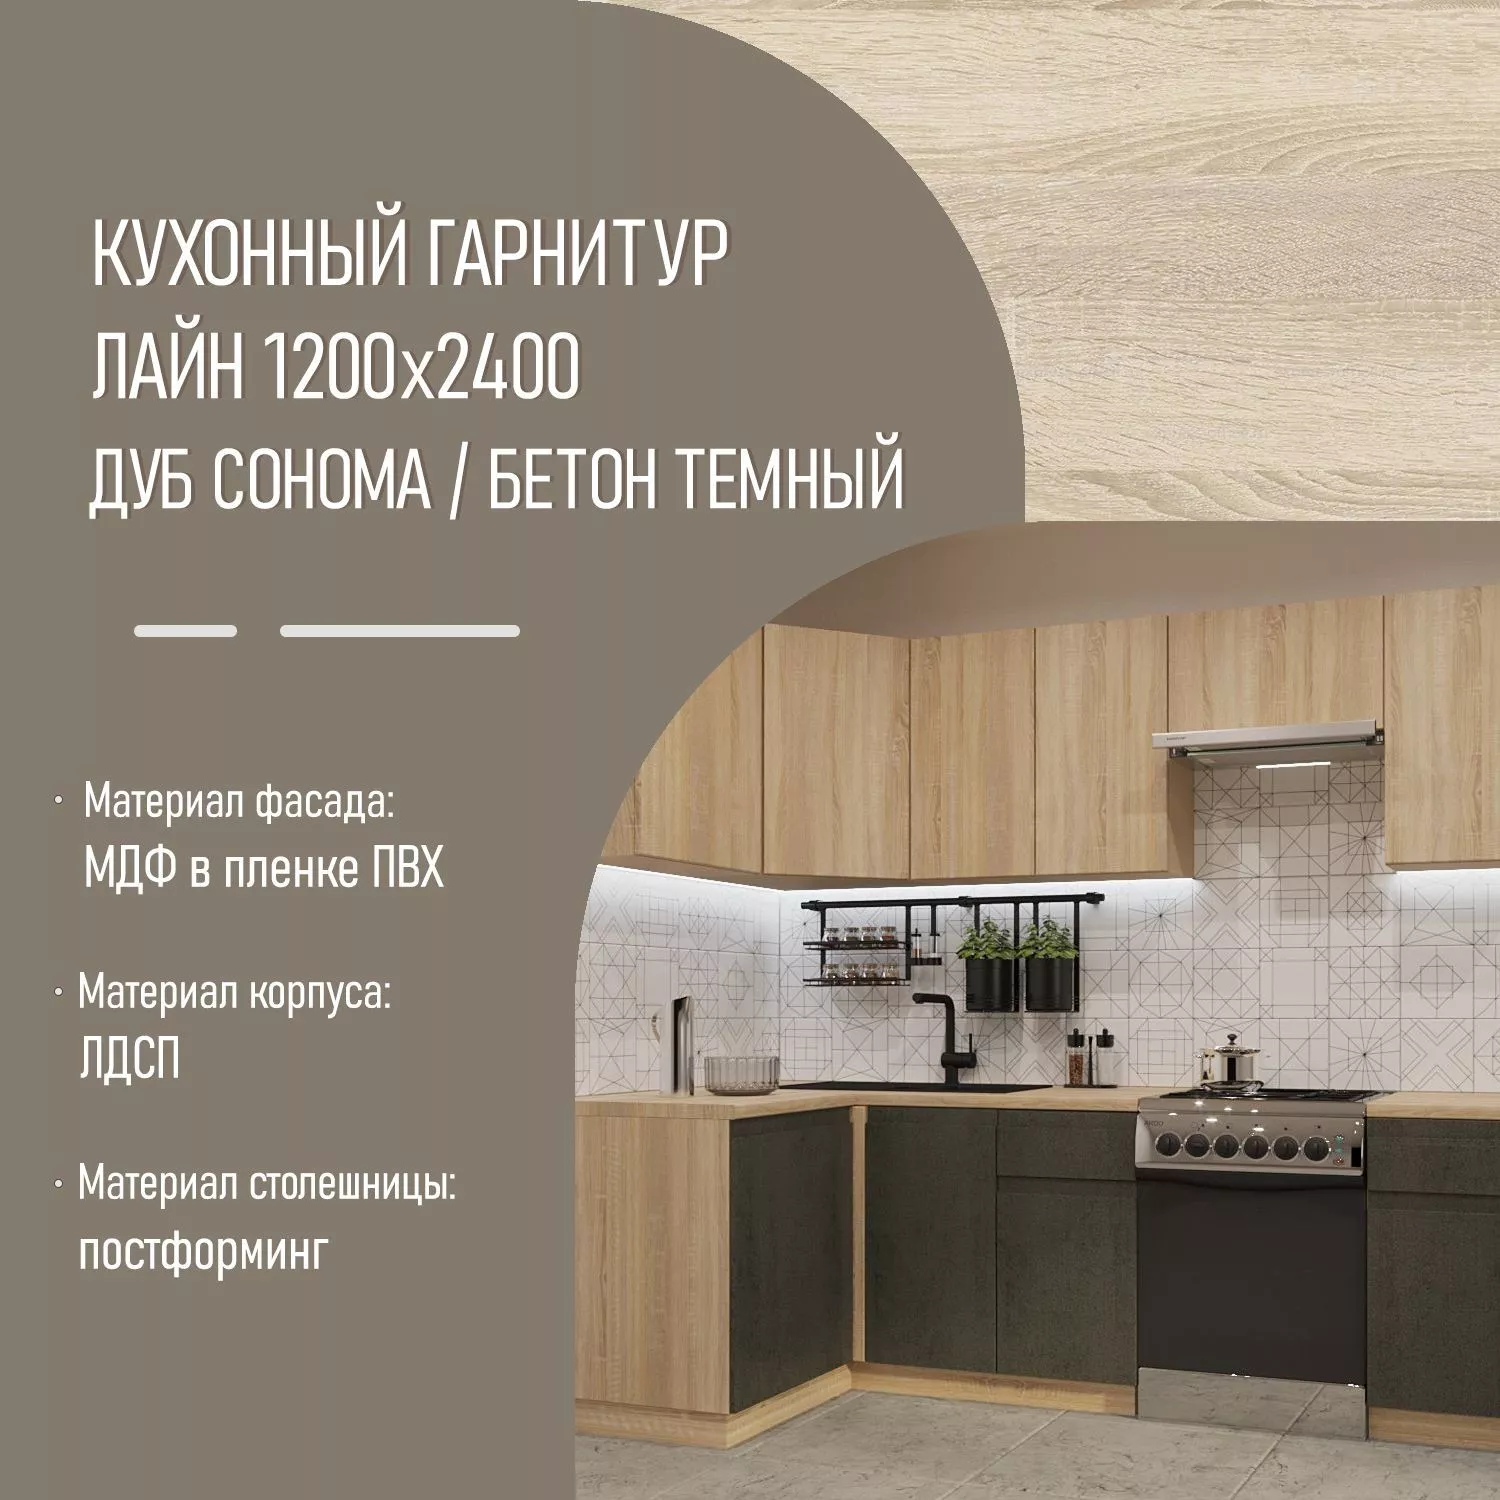 Кухонный гарнитур Дуб сонома / Бетон темный Лайн 1200х2400 (арт.32)